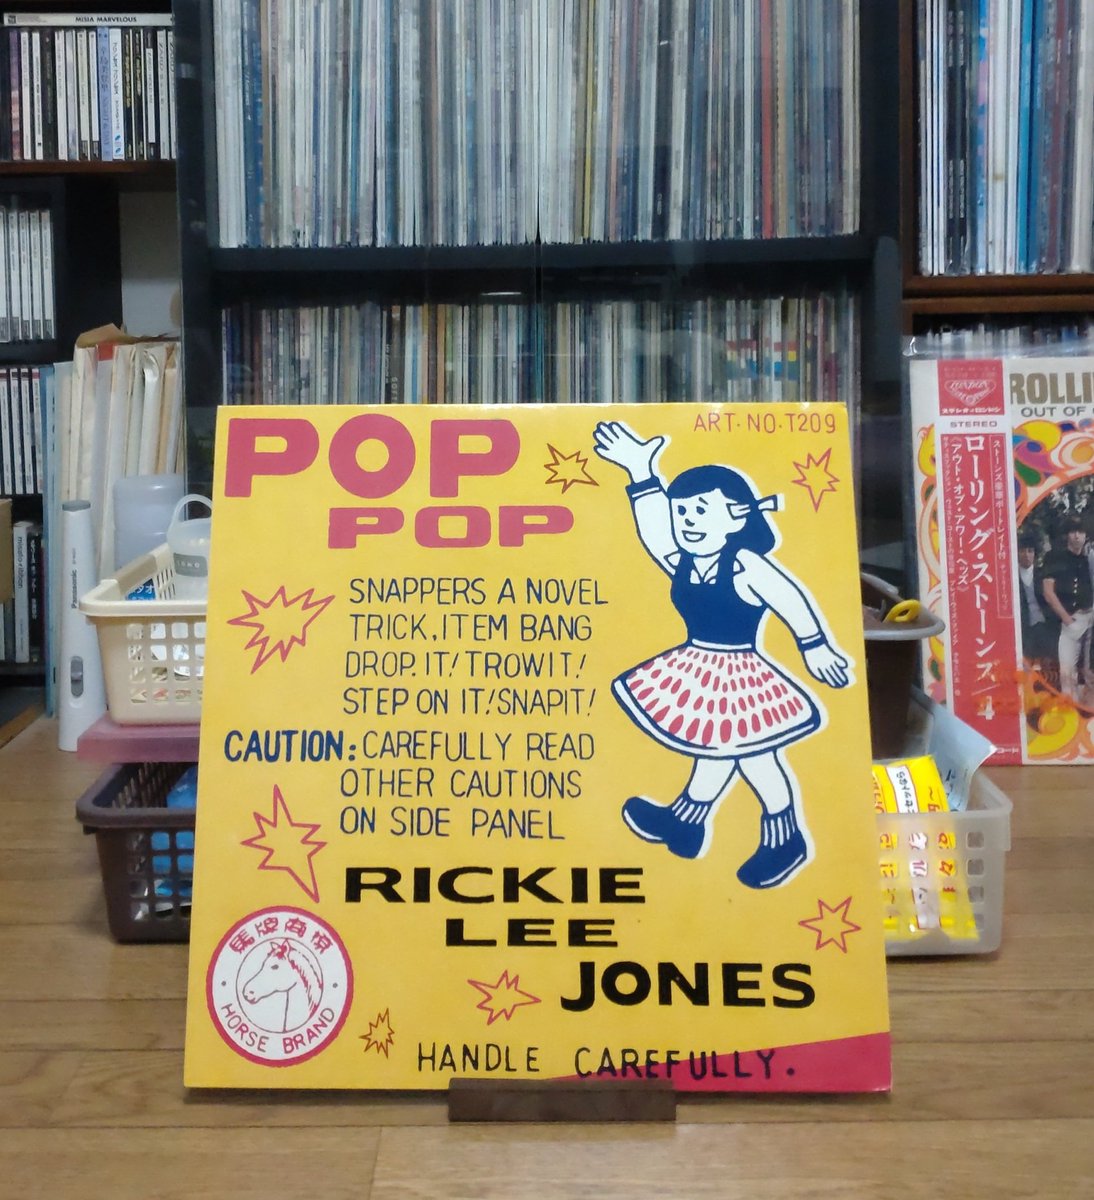 夜のレコードタイム🌃😊
#リッキー・リー・ジョーンズ
#RickieLeeJones ＃レコード